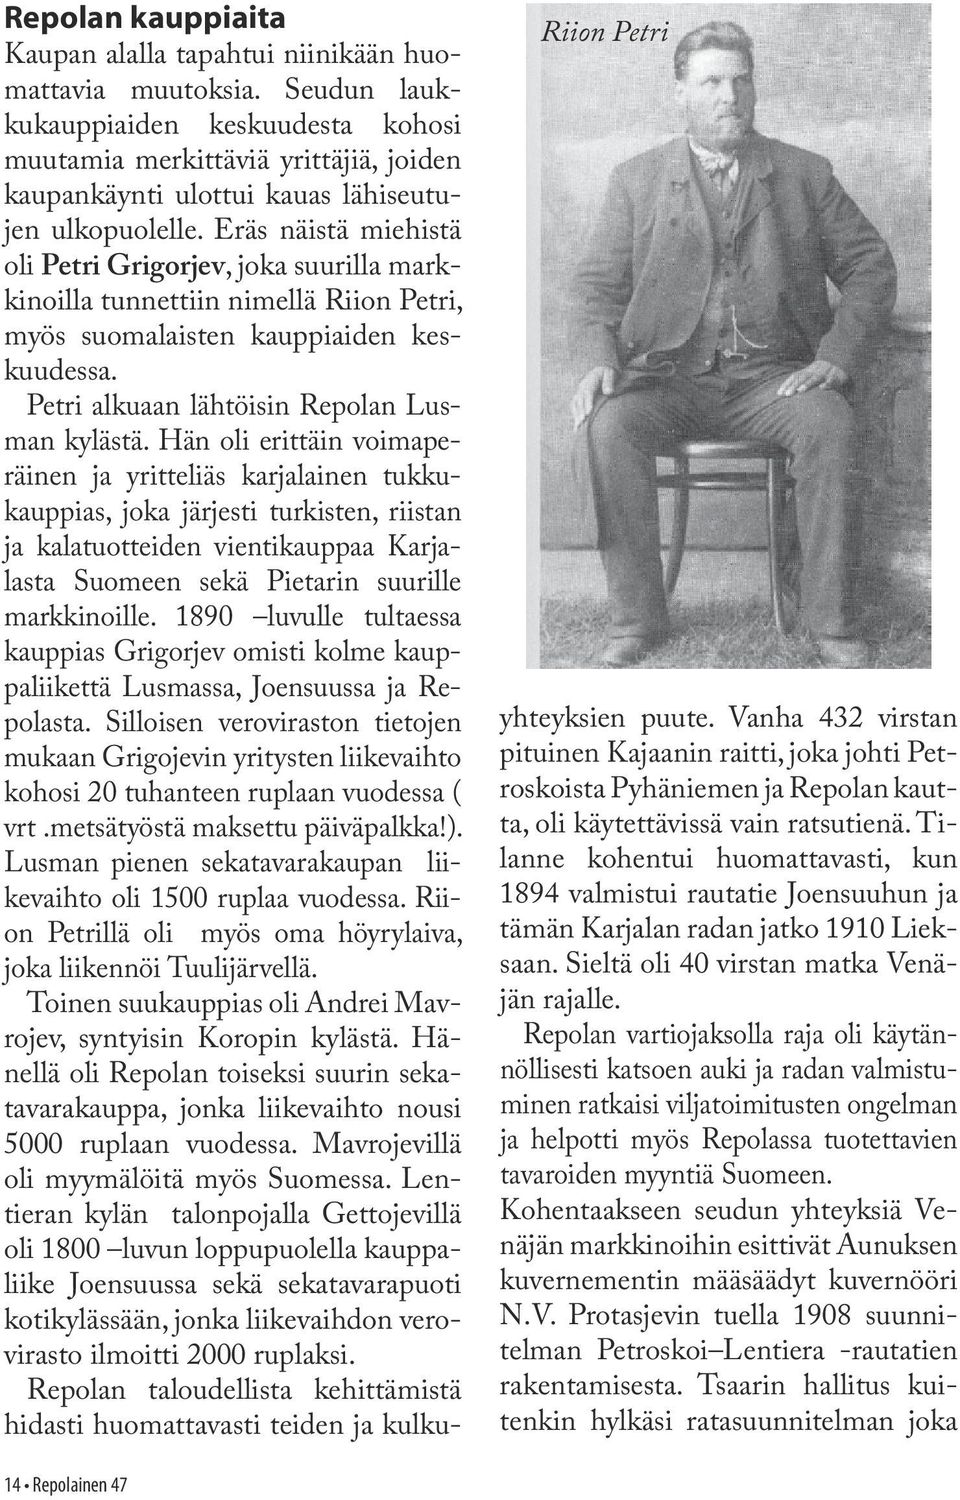 Eräs näistä miehistä oli Petri Grigorjev, joka suurilla markkinoilla tunnettiin nimellä Riion Petri, myös suomalaisten kauppiaiden keskuudessa. Petri alkuaan lähtöisin Repolan Lusman kylästä.